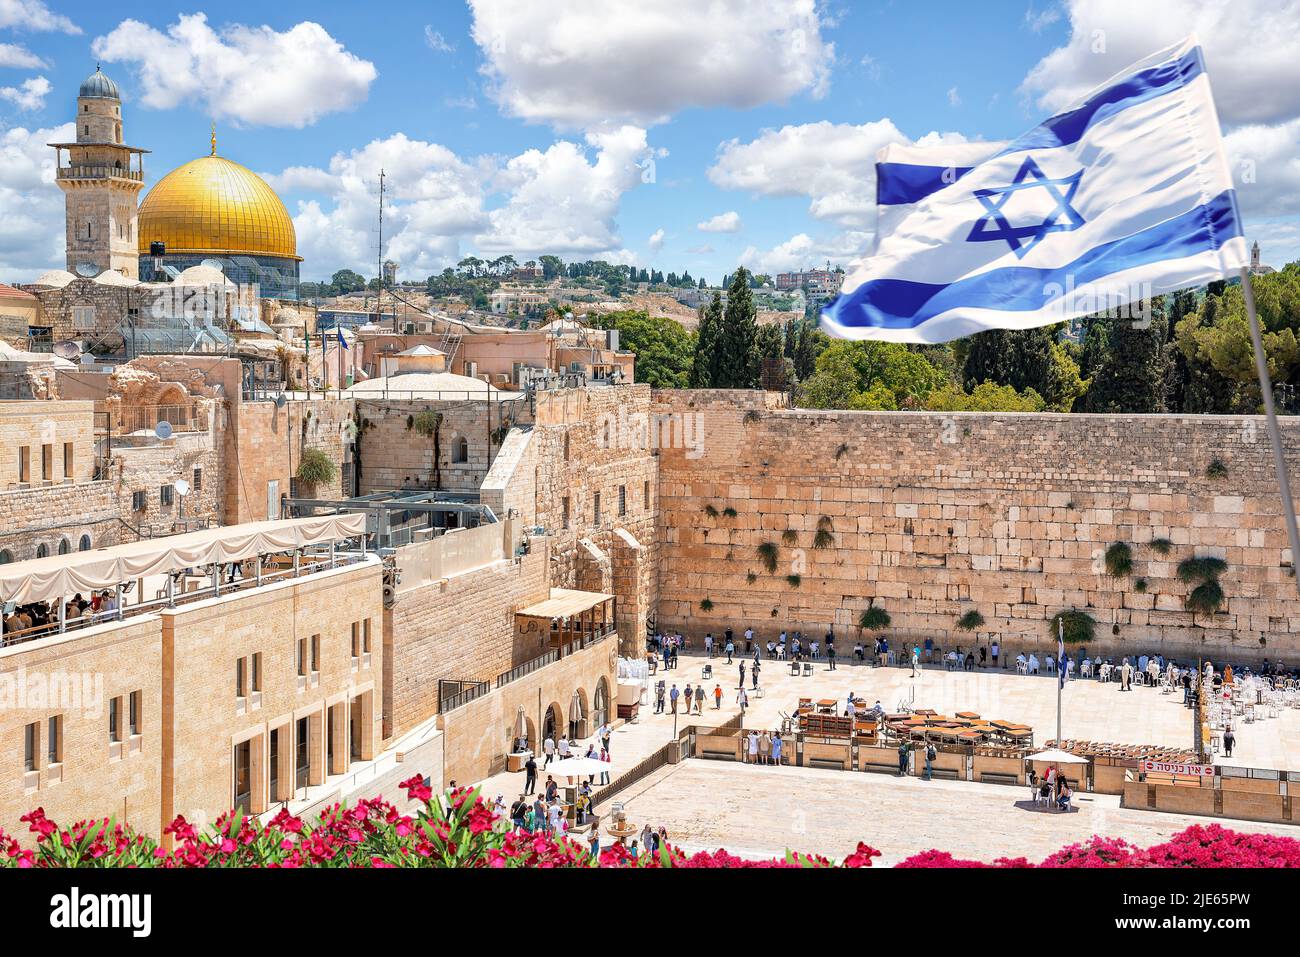 Jérusalem, Israël; 25 juin 2022 - un drapeau israélien souffle dans le vent tandis que les croyants orthodoxes juifs lisent la Torah et prient face au mur occidental, dedans Banque D'Images